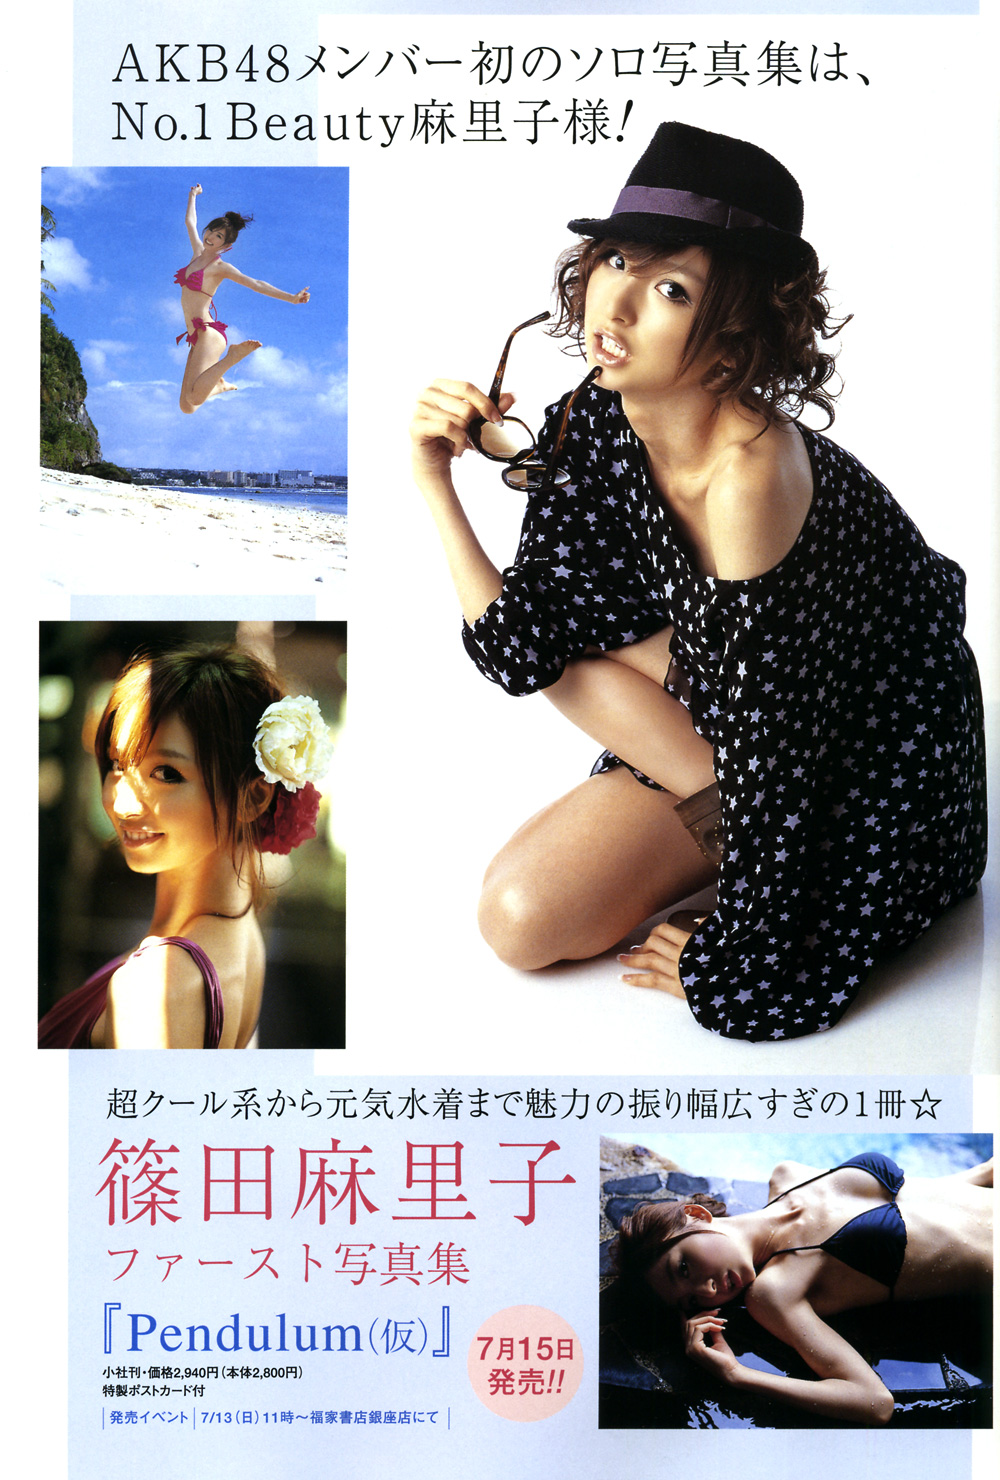 Shinoda Mariko Photo Book